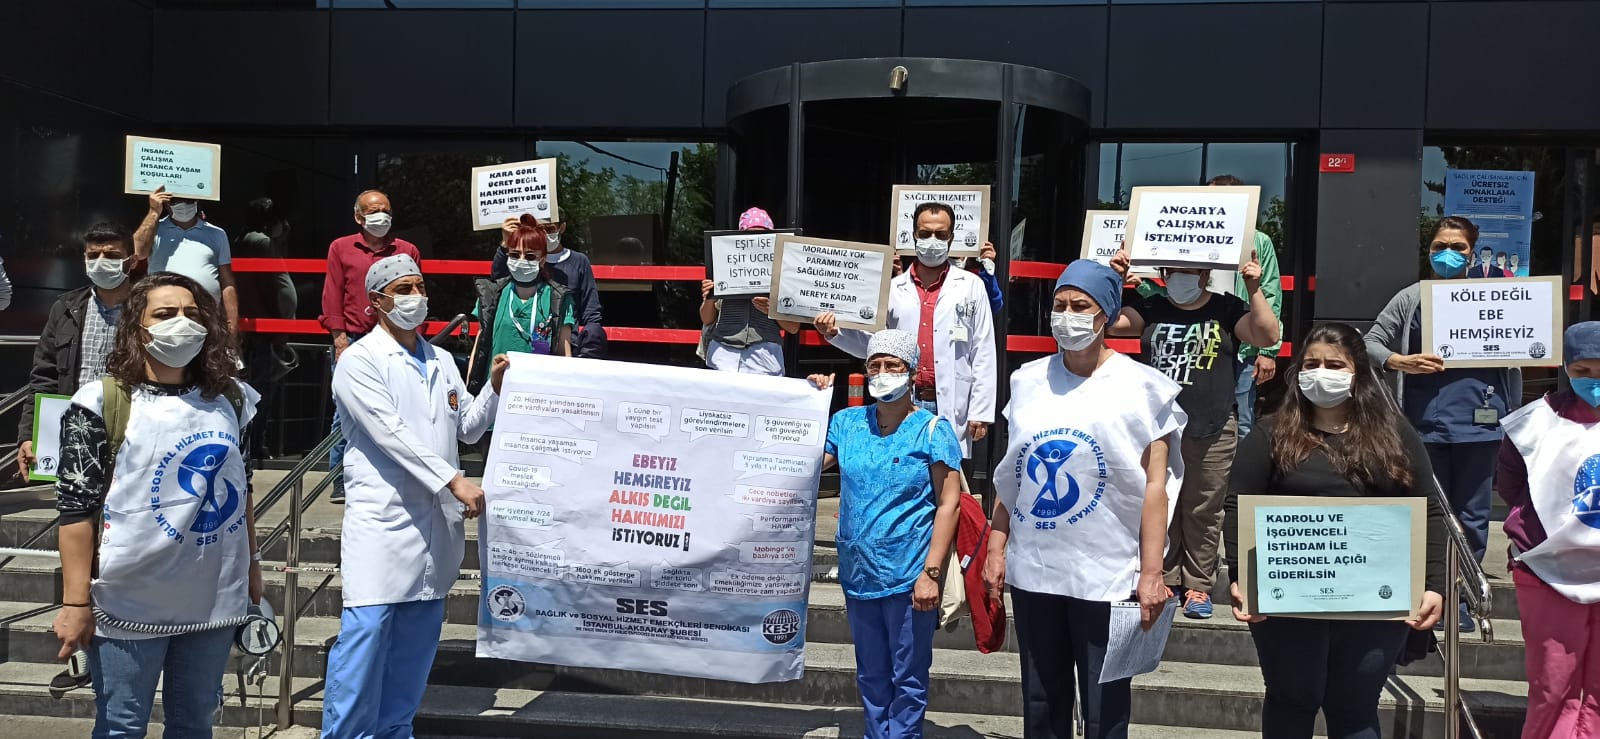 İstanbul Aksaray Şubemiz Ebe ve Hemşirelerin Hakları İçin Hastane Önünde Eylem Yaptı